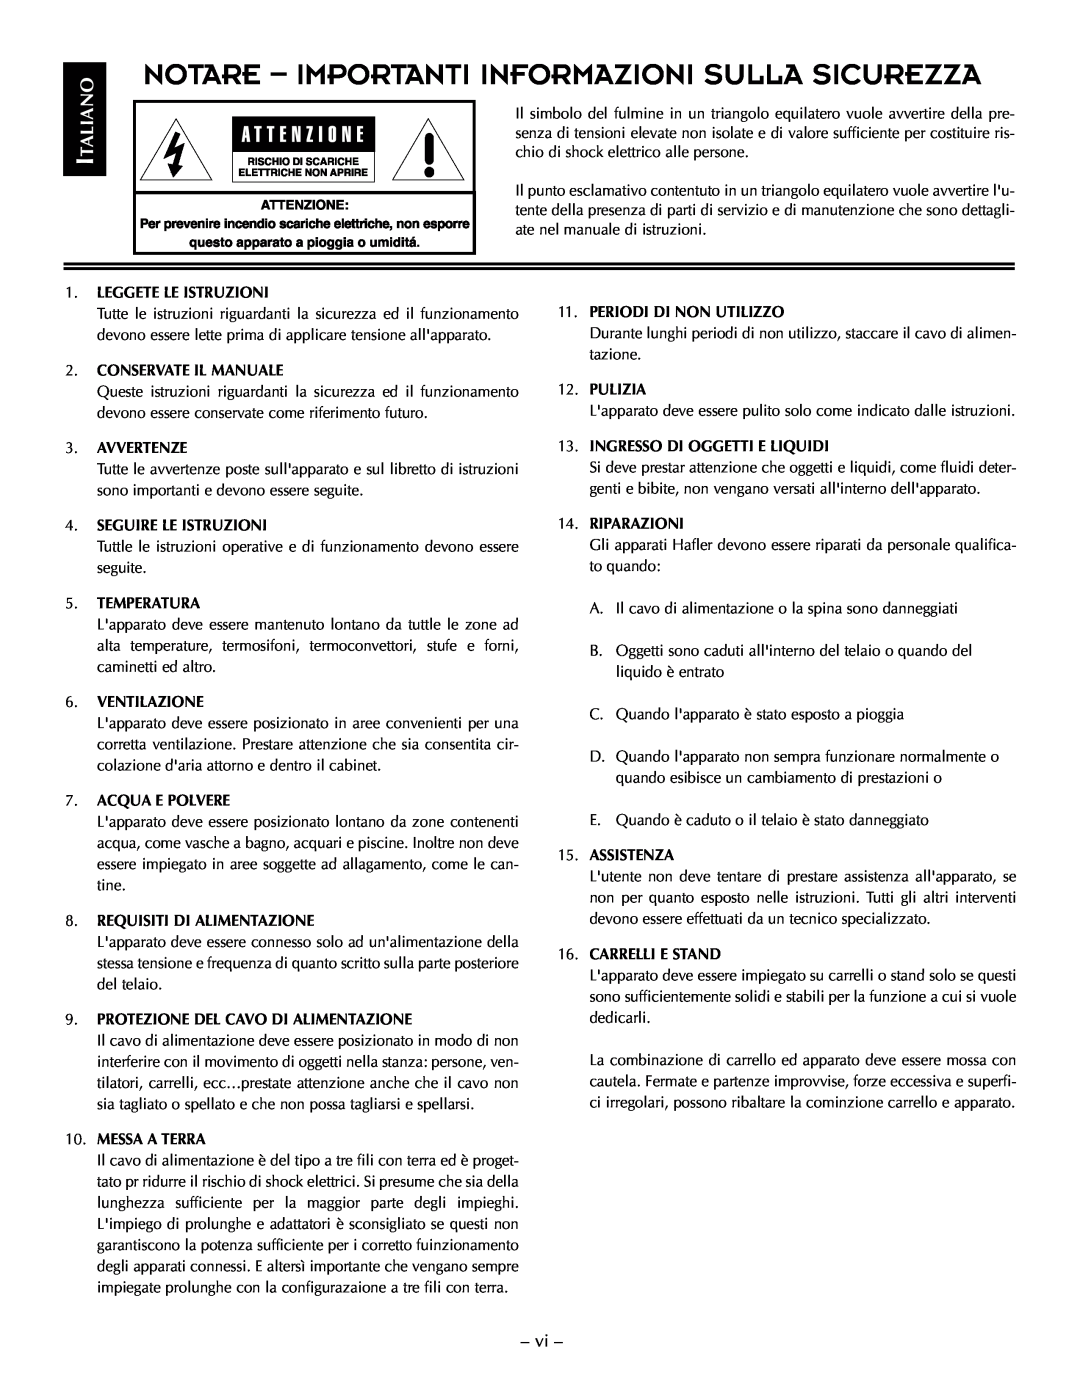 Hafler TRM6.1CE manual Notare - Importanti Informazioni Sulla Sicurezza, Italiano 